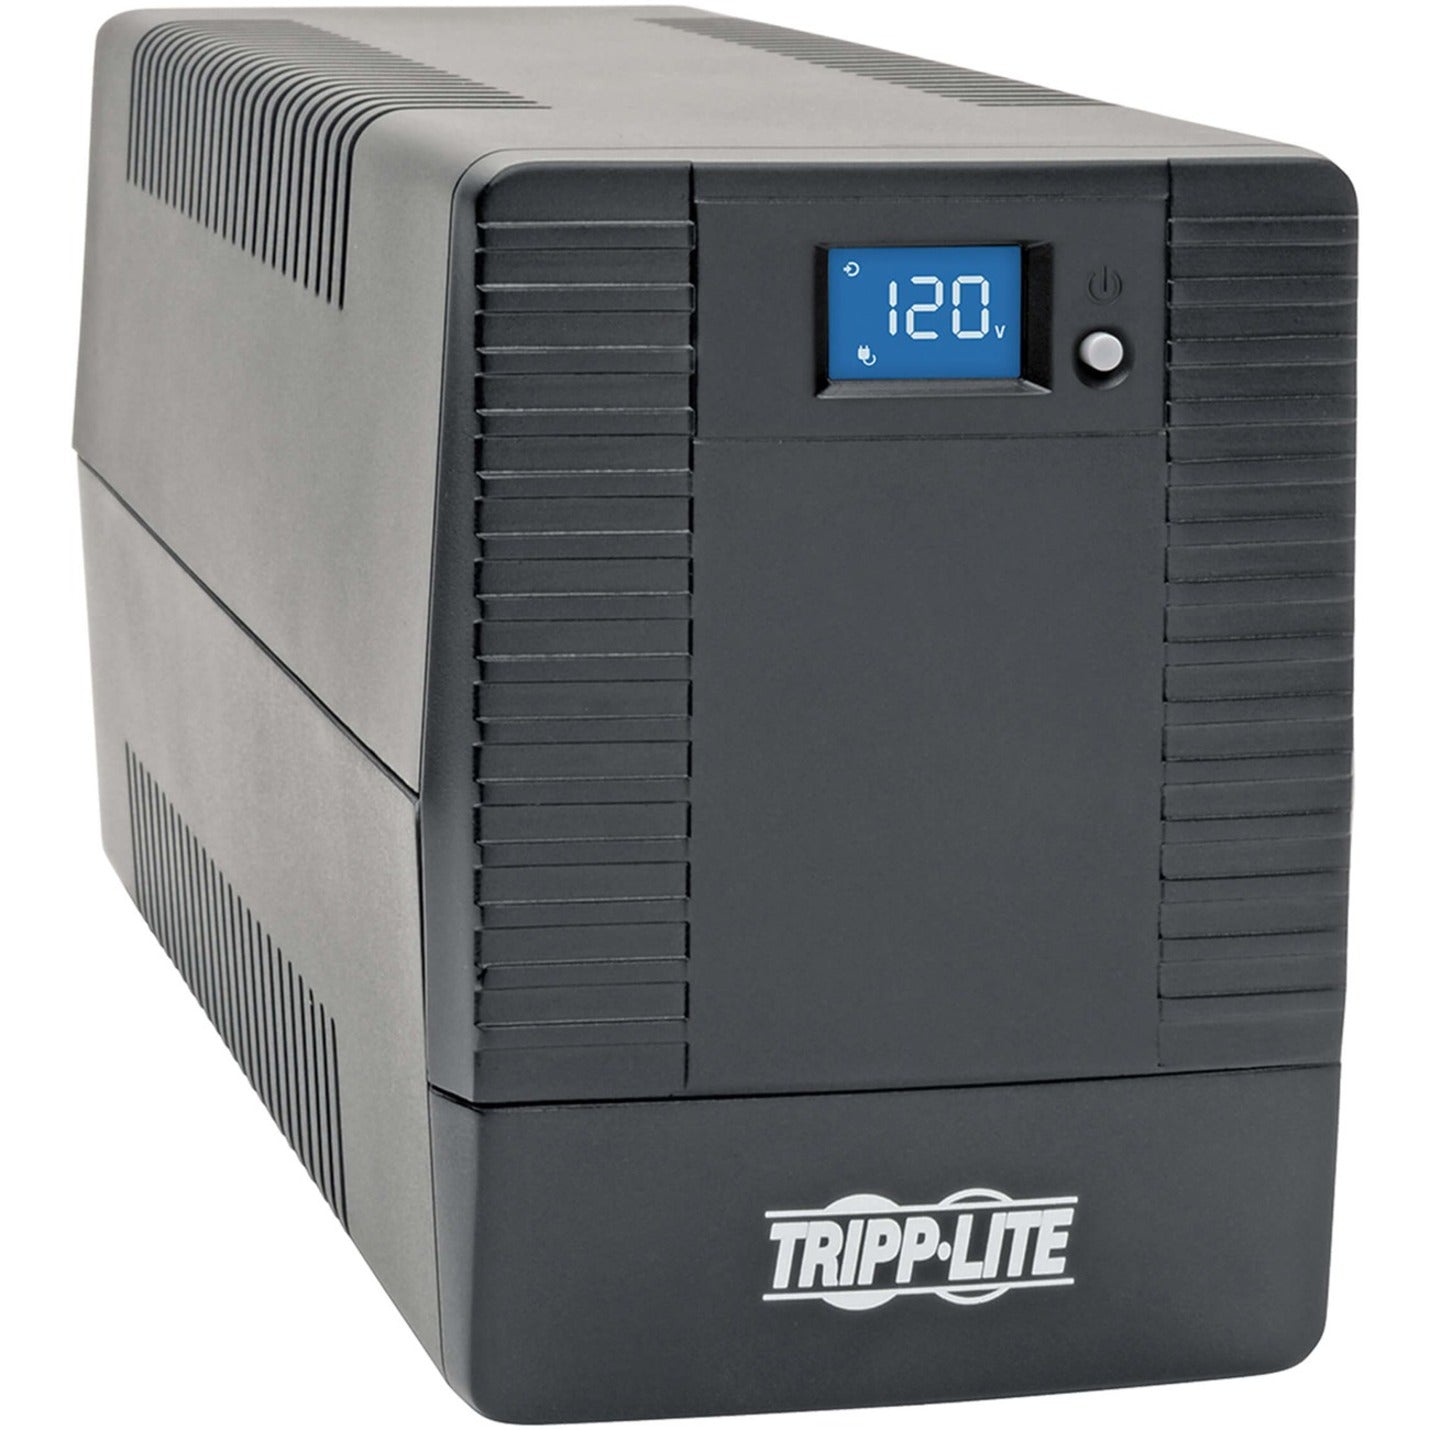 Tripp Lite OMNI700LCDT 700VA Tower UPS, 3 Year Warranty, LCD Display, USB Port